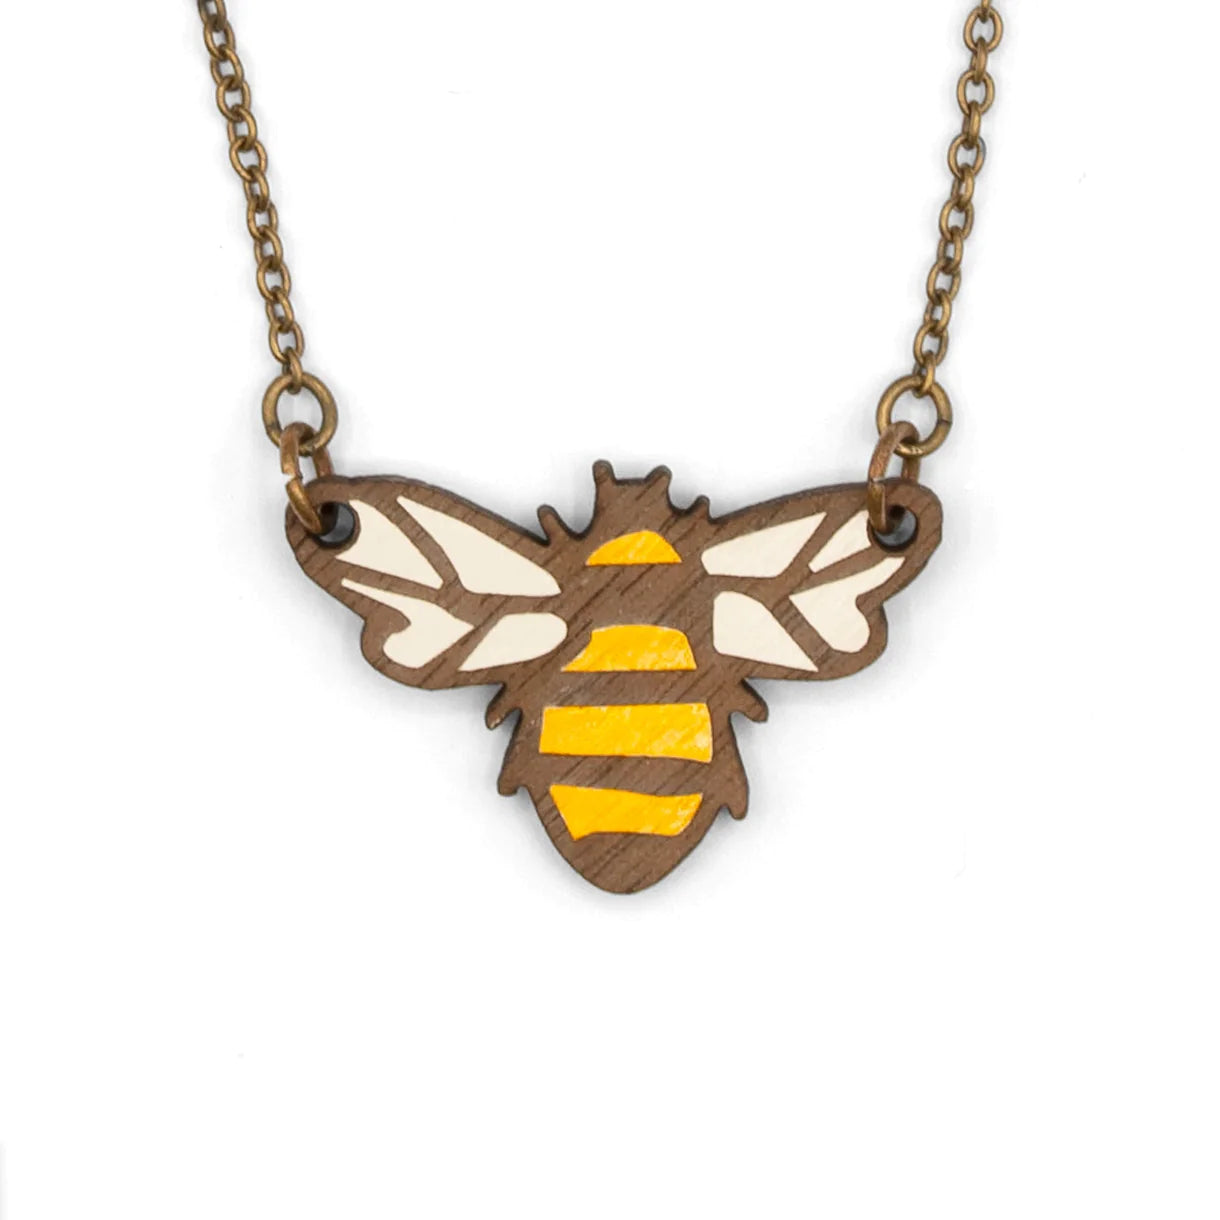 Queen Bee Necklace - The Nancy Smillie Shop - Art, Jewellery & Designer Gifts Glasgow